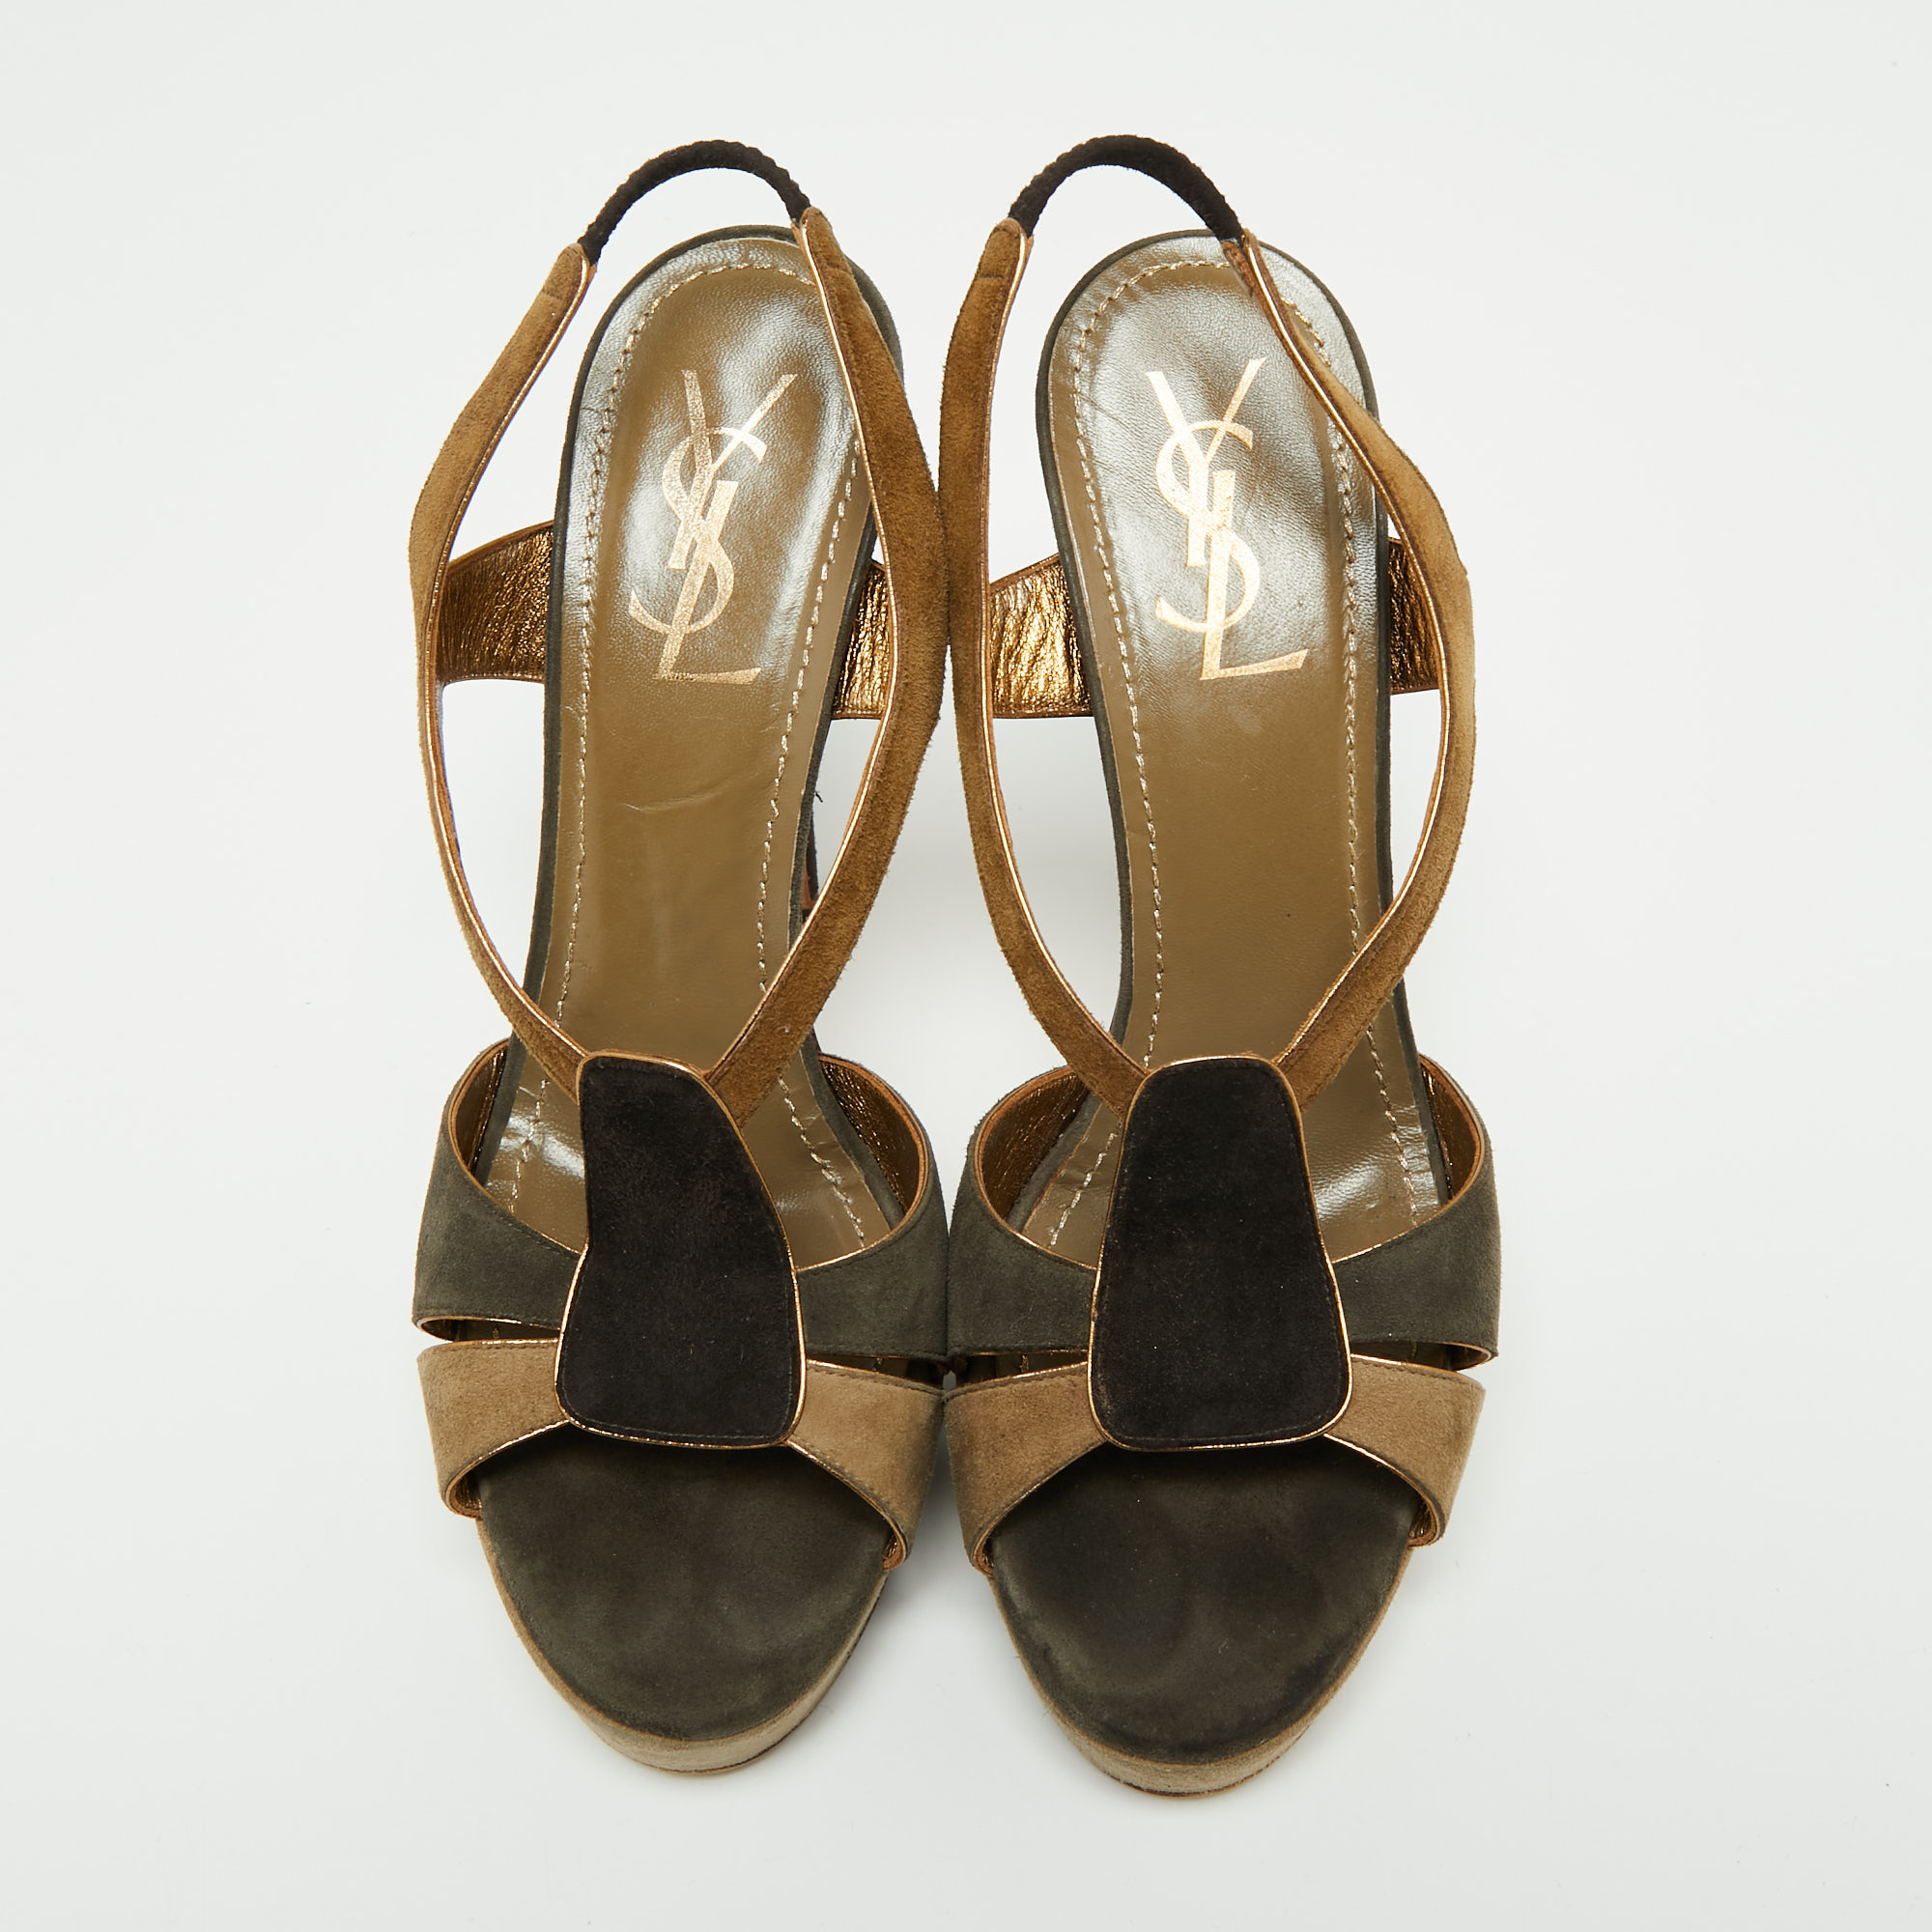 Yves Saint Laurent Multicolor Suede Slingback Platform Sandals Size 39